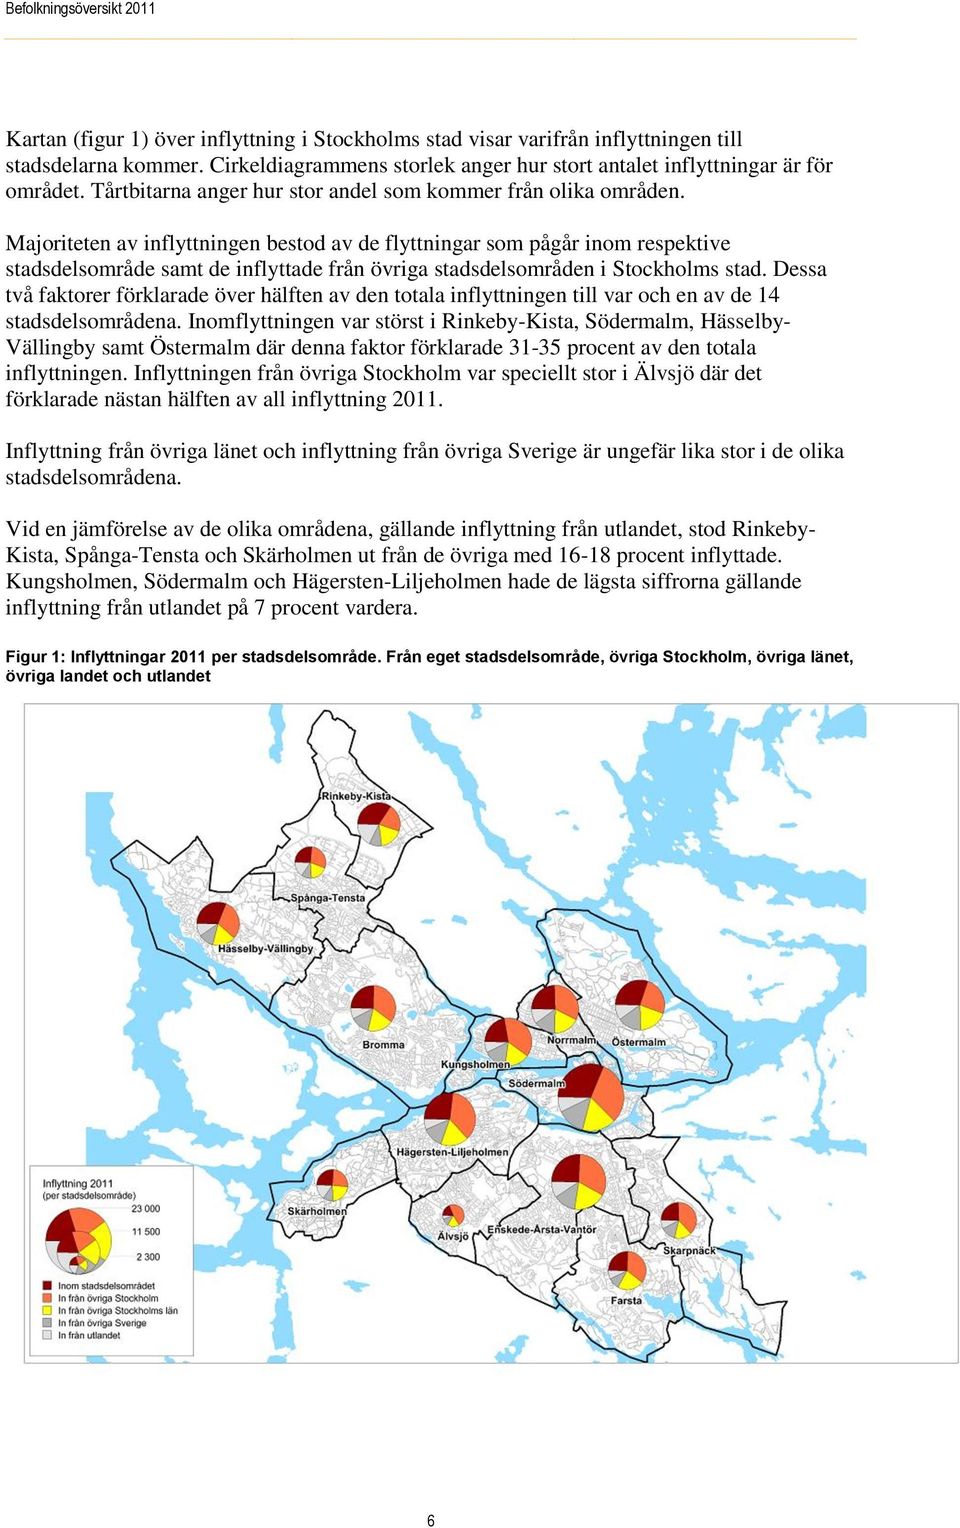 Majoriteten av inflyttningen bestod av de flyttningar som pågår inom respektive stadsdelsområde samt de inflyttade från övriga stadsdelsområden i Stockholms stad.